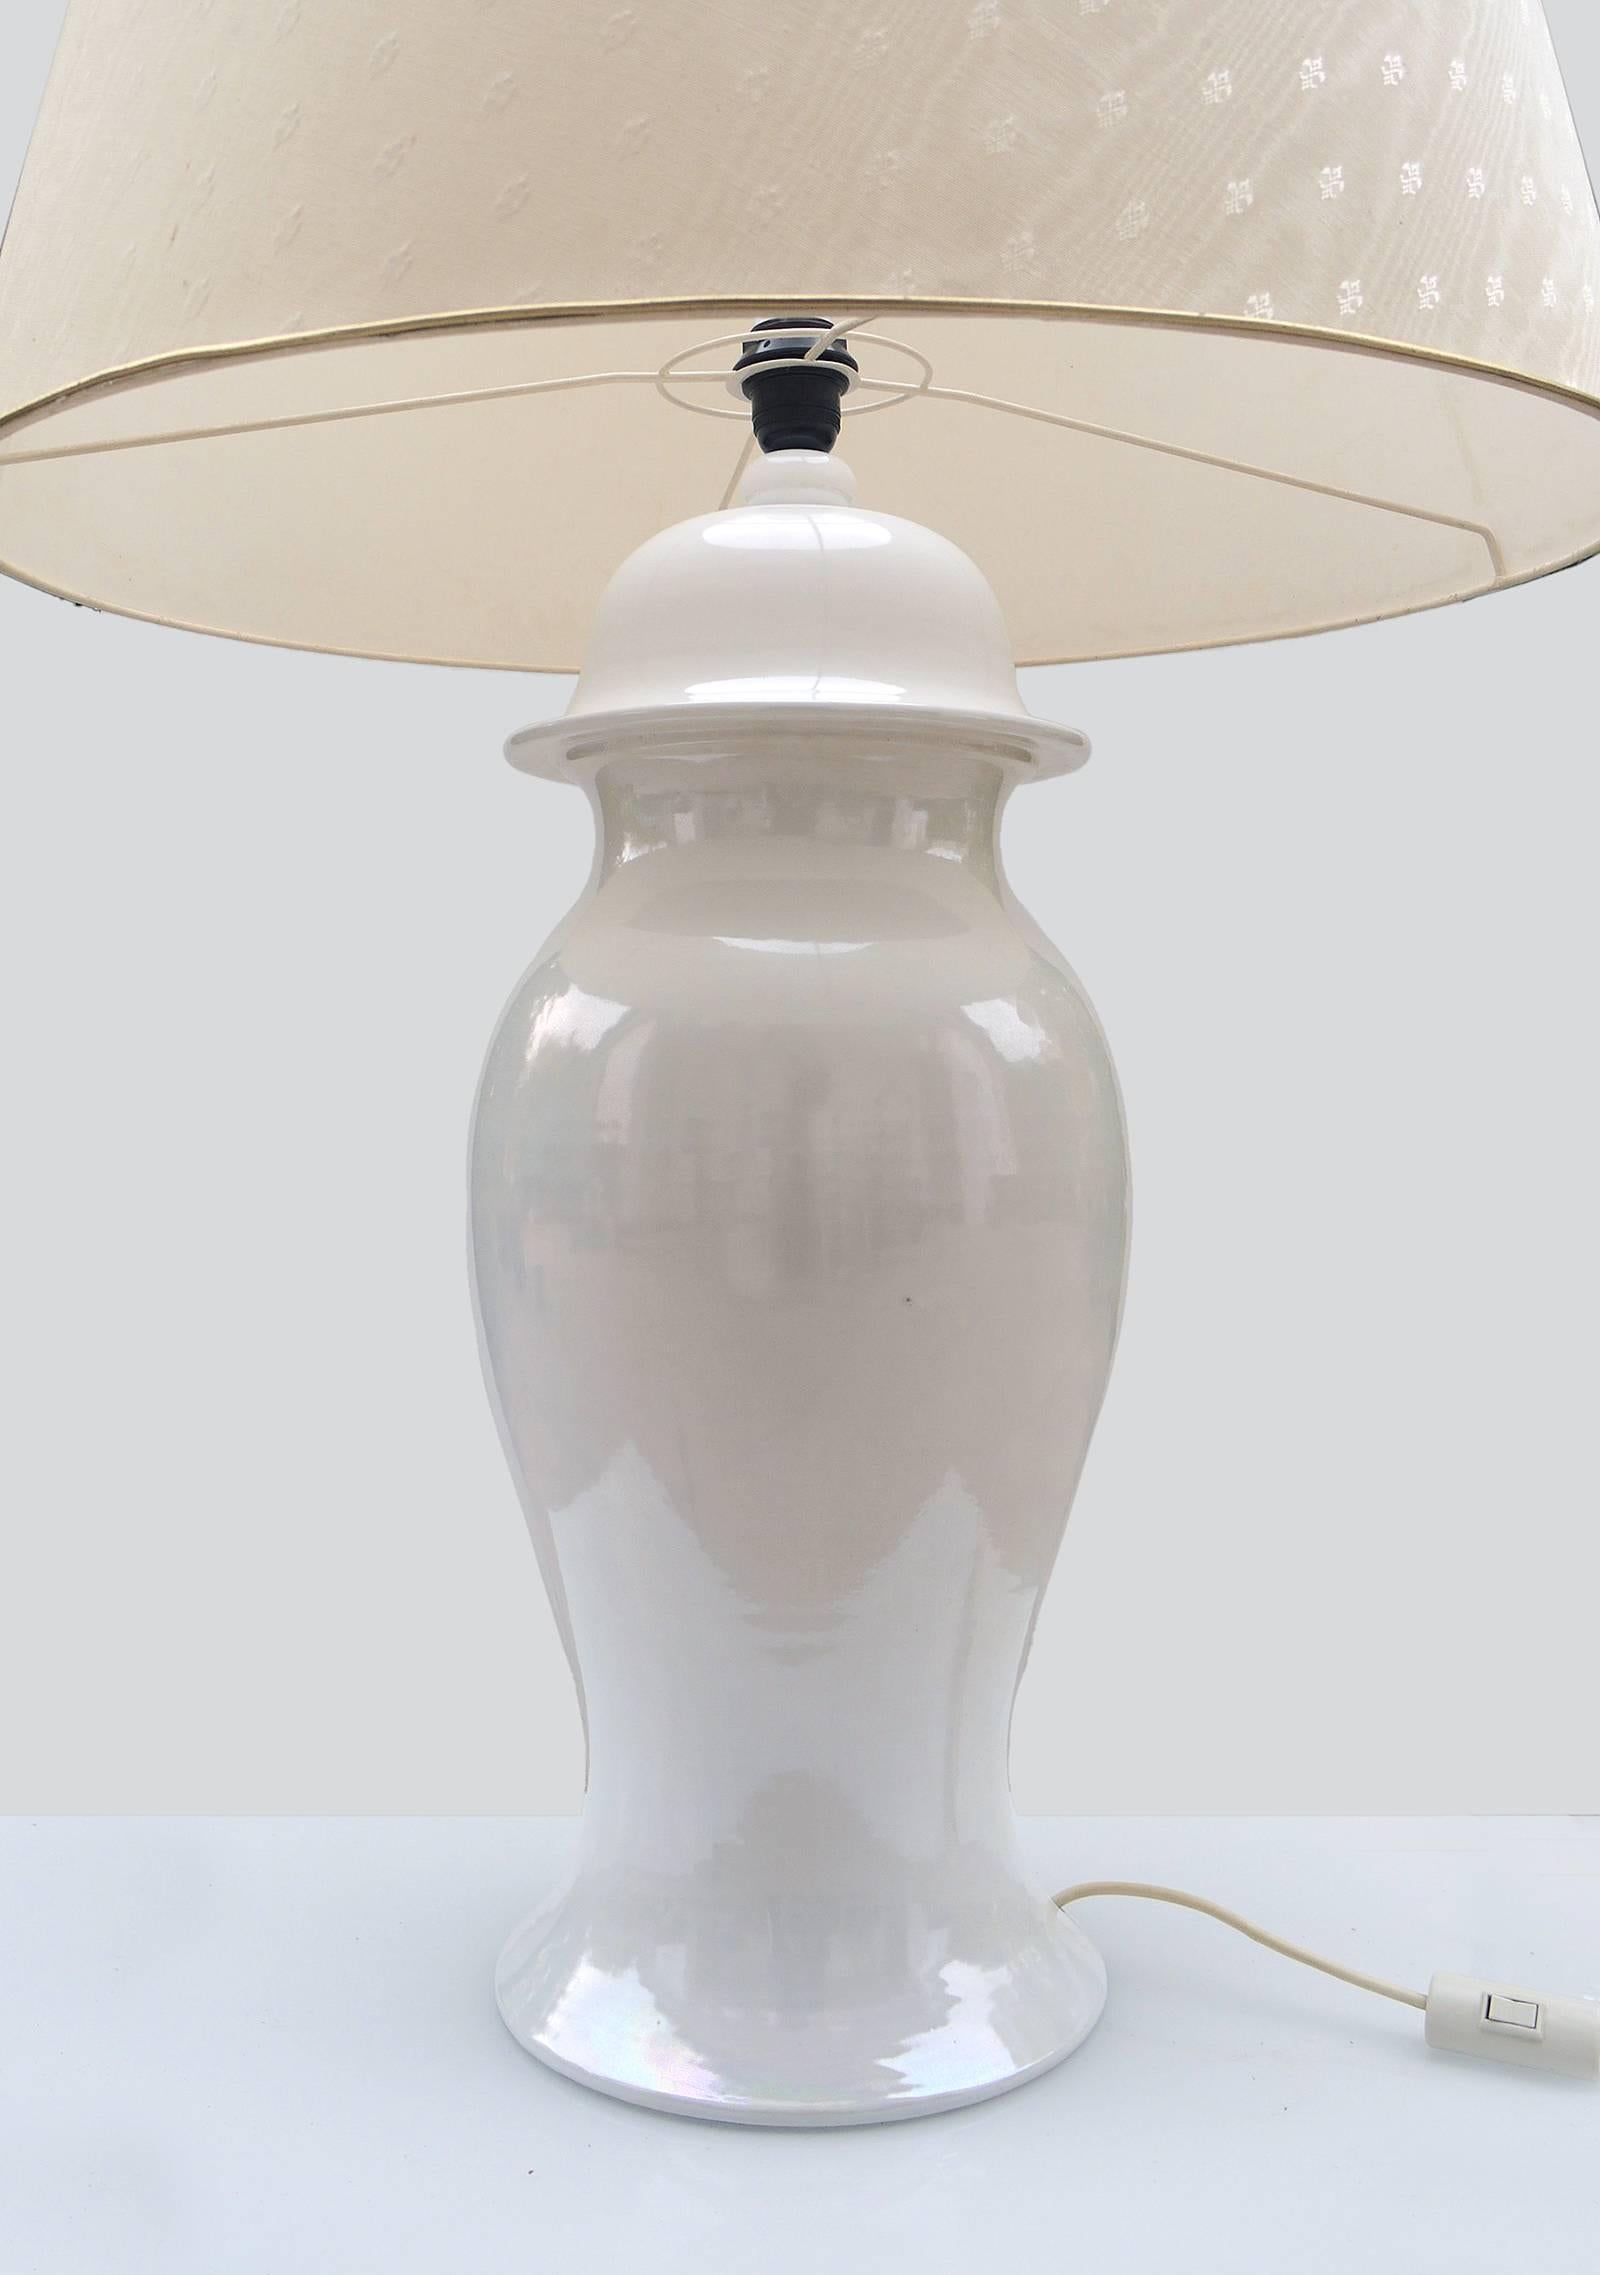 Elegant rare, énorme lampe en céramique en forme de pot de gingembre de Tommaso Barbi, fabriquée en Italie dans les années 1960. Base en céramique de couleur crème ivoire, abat-jour en tissu d'origine avec motif d'emblème. Signé à la base.